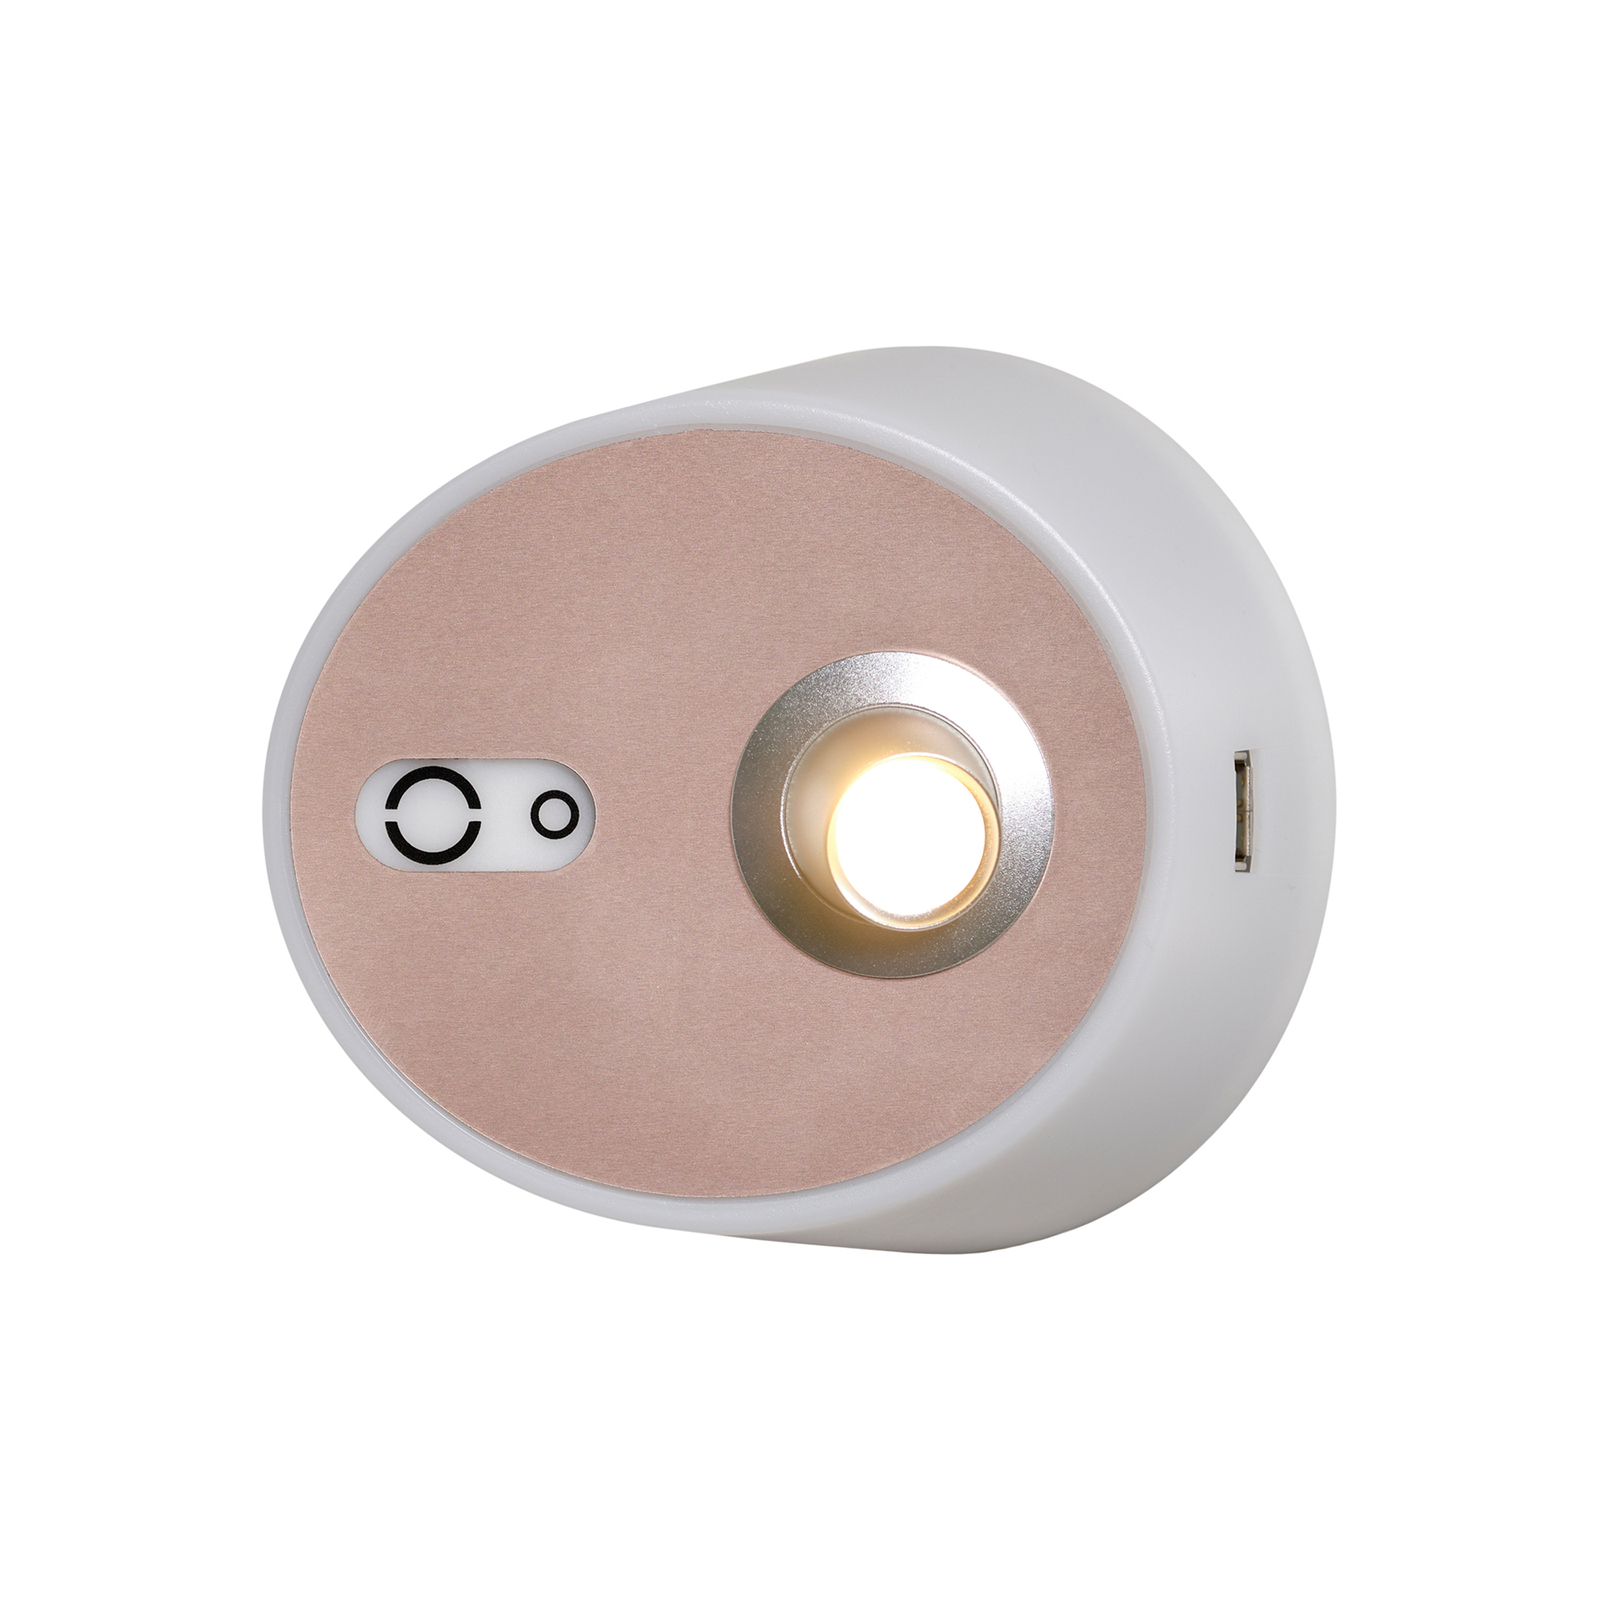 Zoom LED stenska svetilka, reflektor, izhod USB, roza-medena